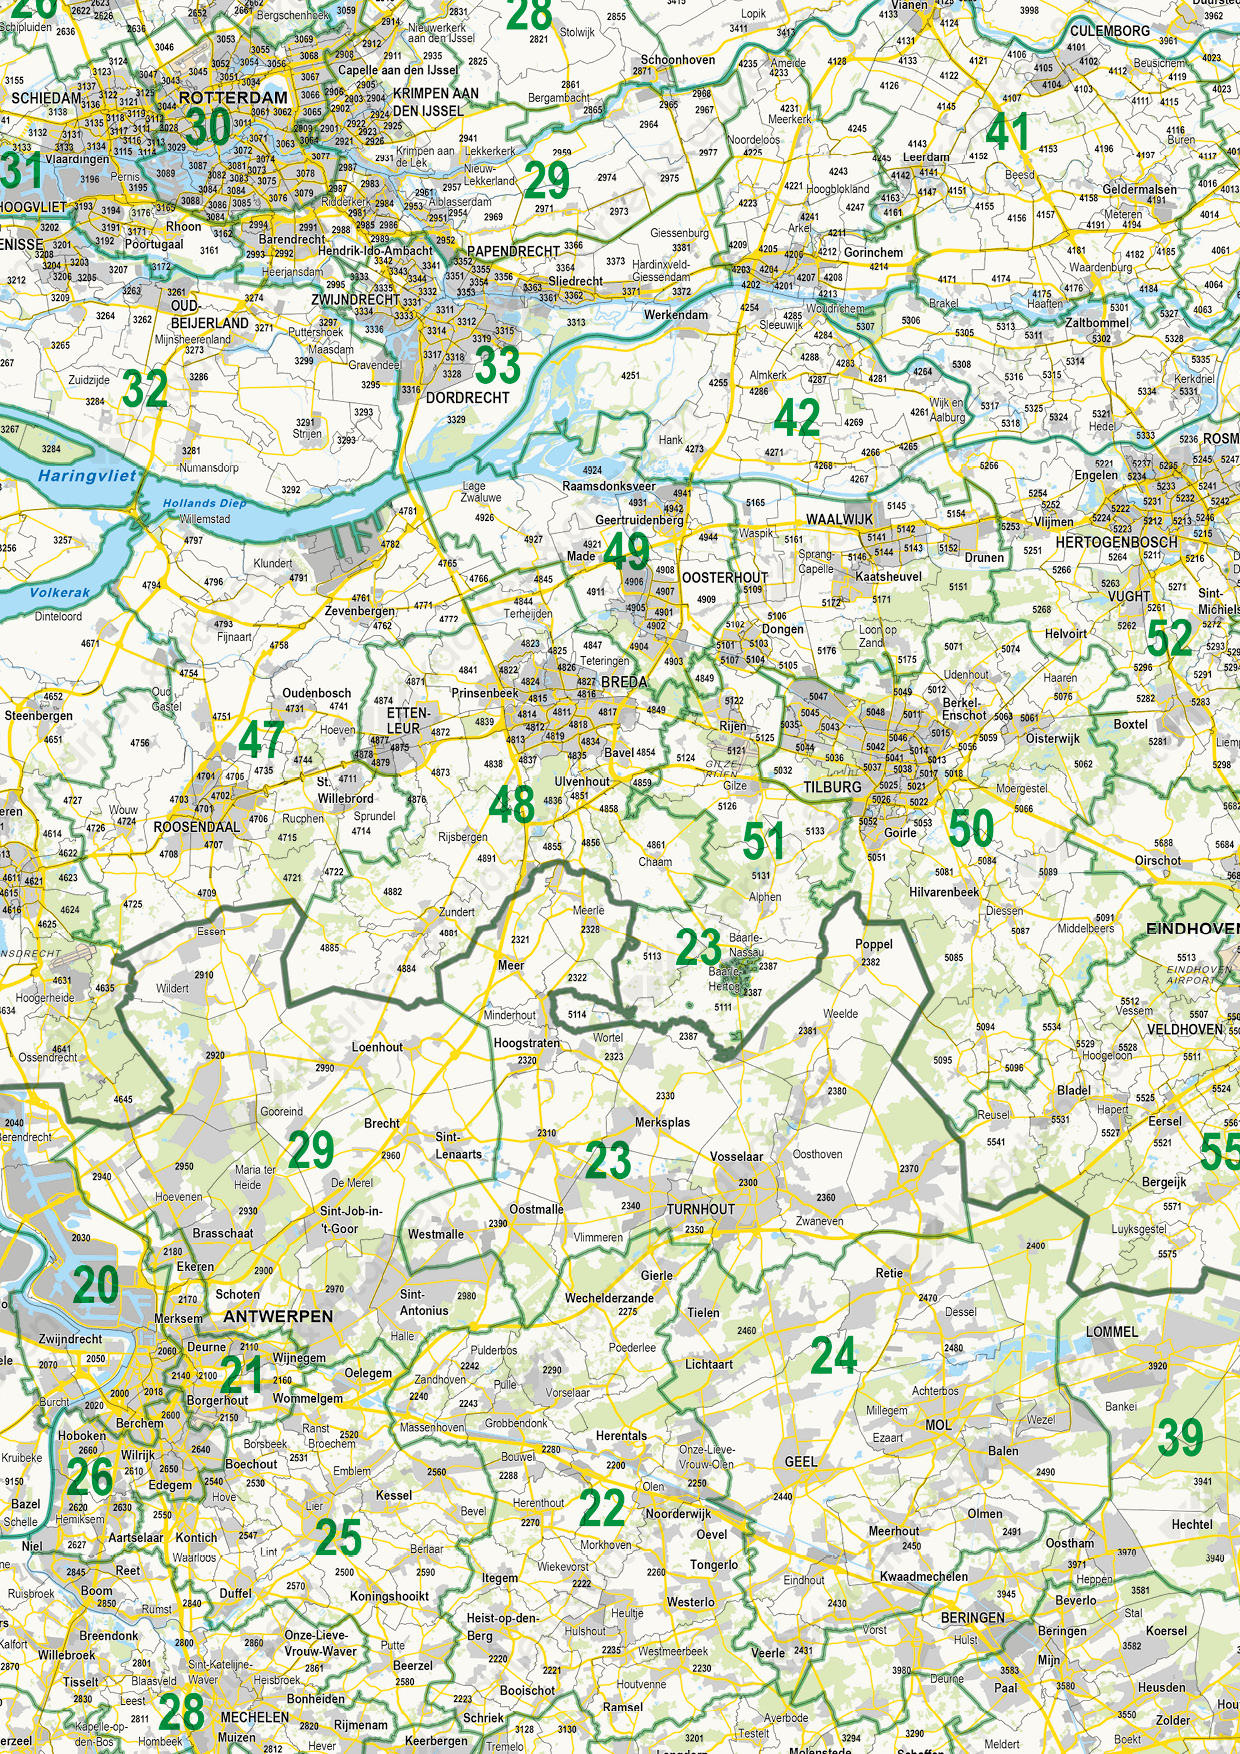 Postcodekaart Benelux 2- en 4-cijferig